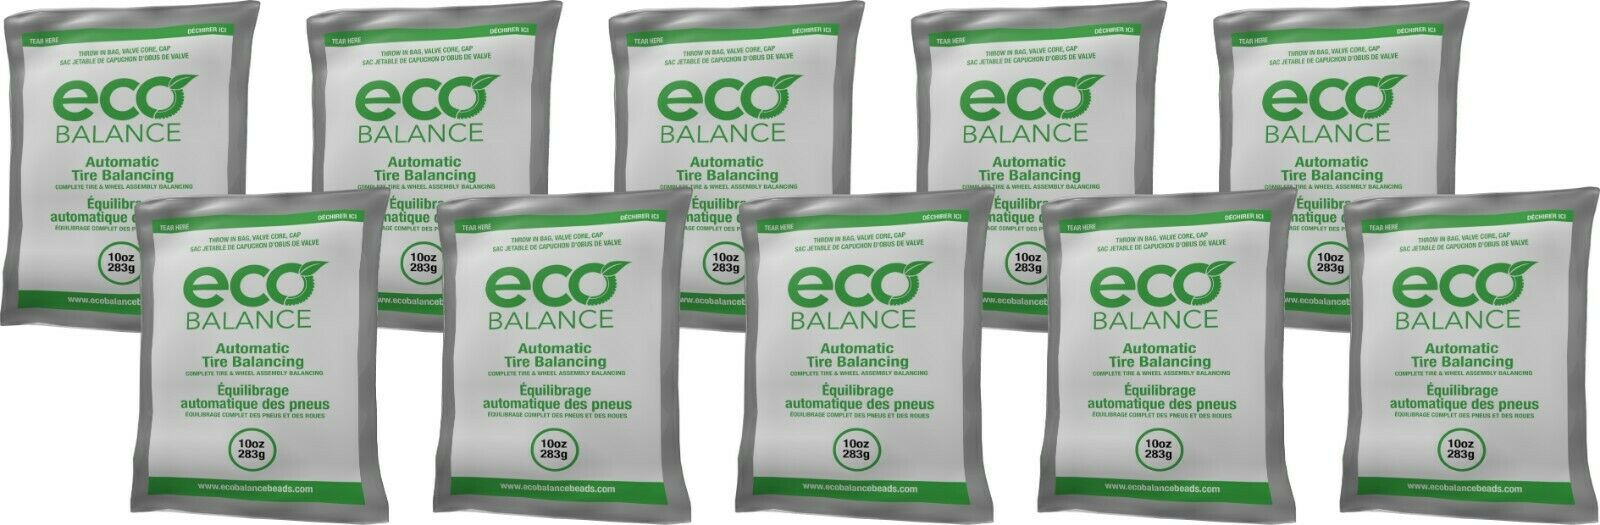 ECO Balance 10EB Tire Balancing Beads 10 oz (10 Bags)